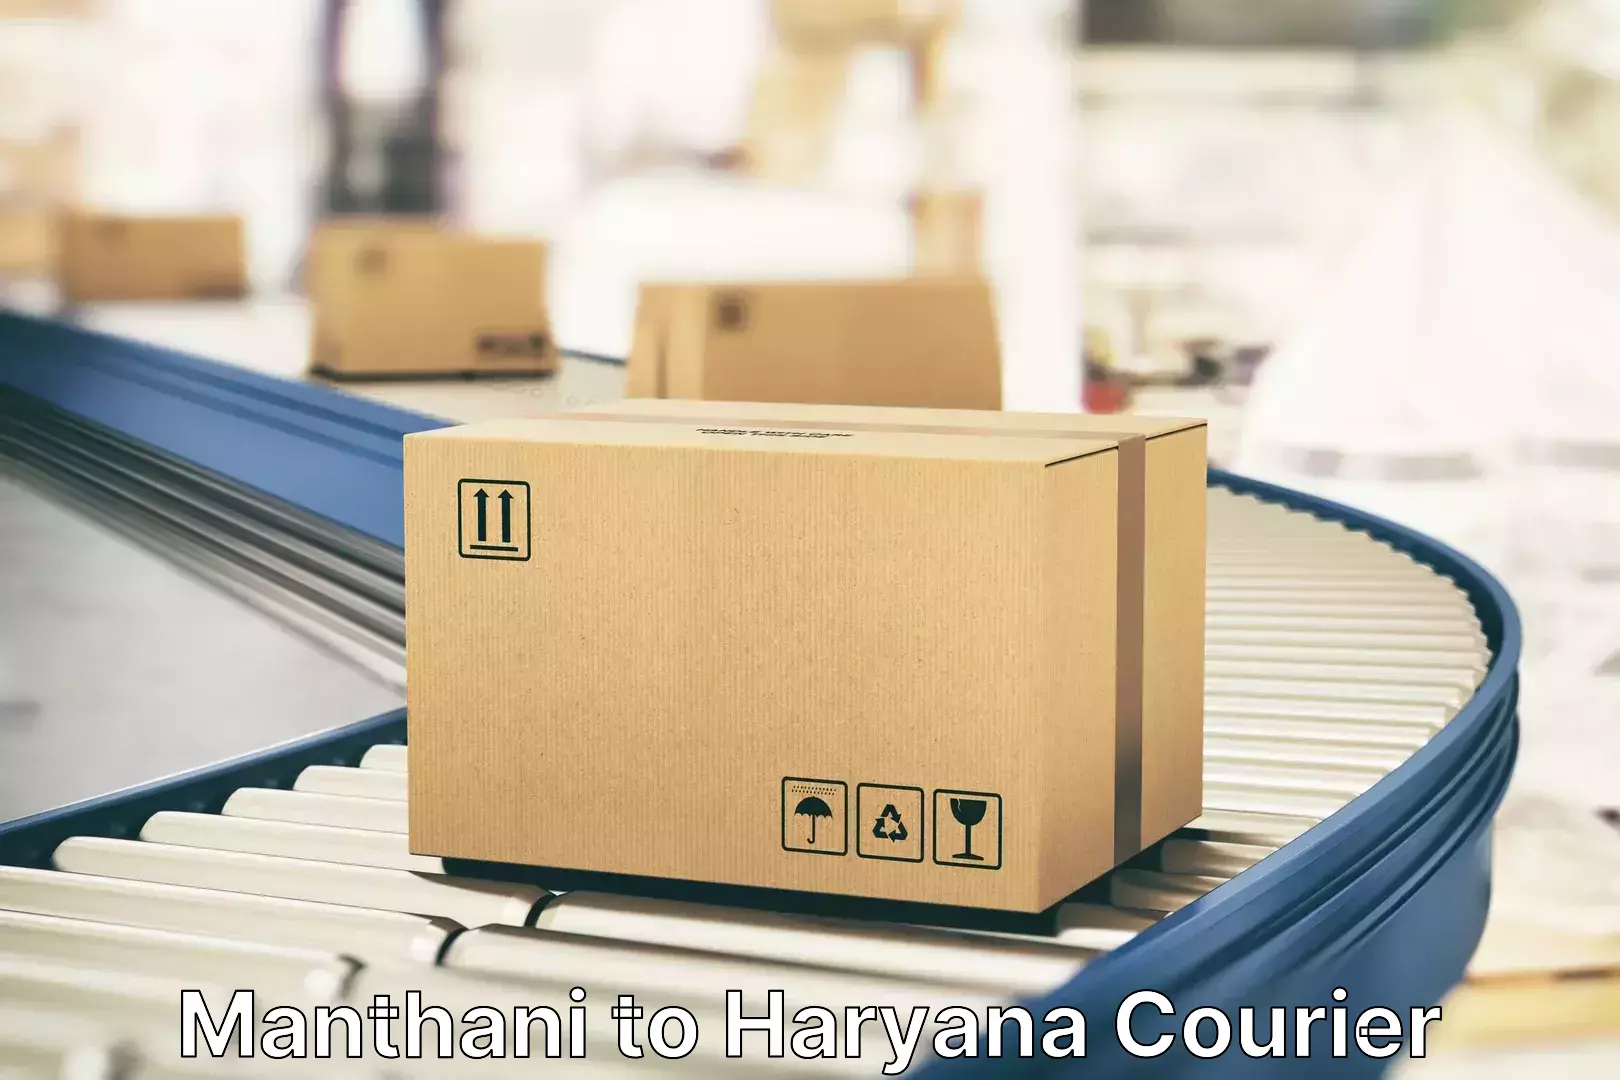 Luggage shipment tracking Manthani to Gohana